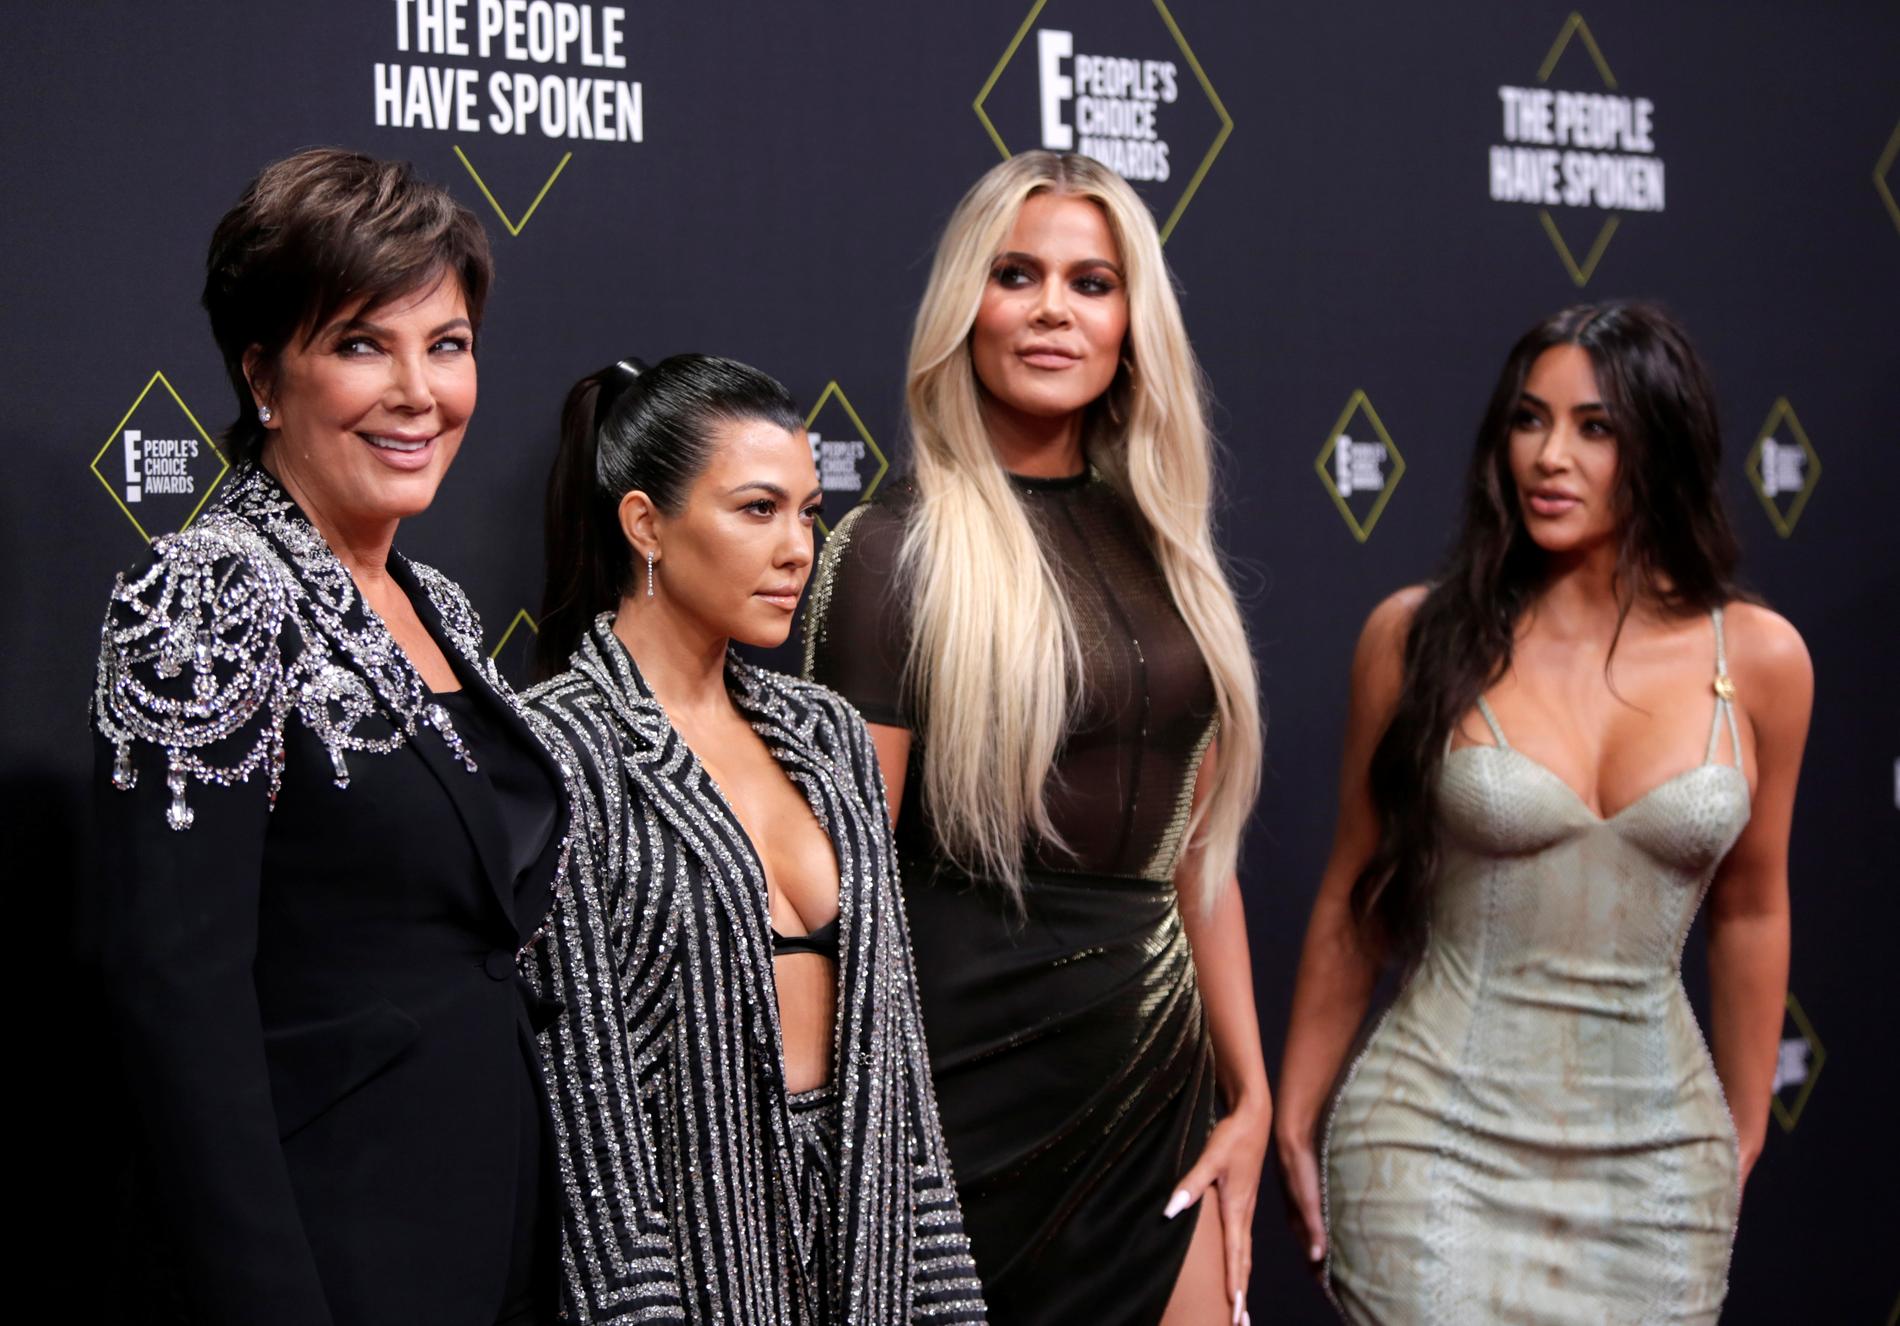 Ragazze Kardashian: (in precedenza) Chris Jenner (67 anni) con le sue tre figlie più grandi, Courtney (44 anni), 39 anni, e Kim Kardashian (44 anni).  Riempito qui nell'autunno del 2019.